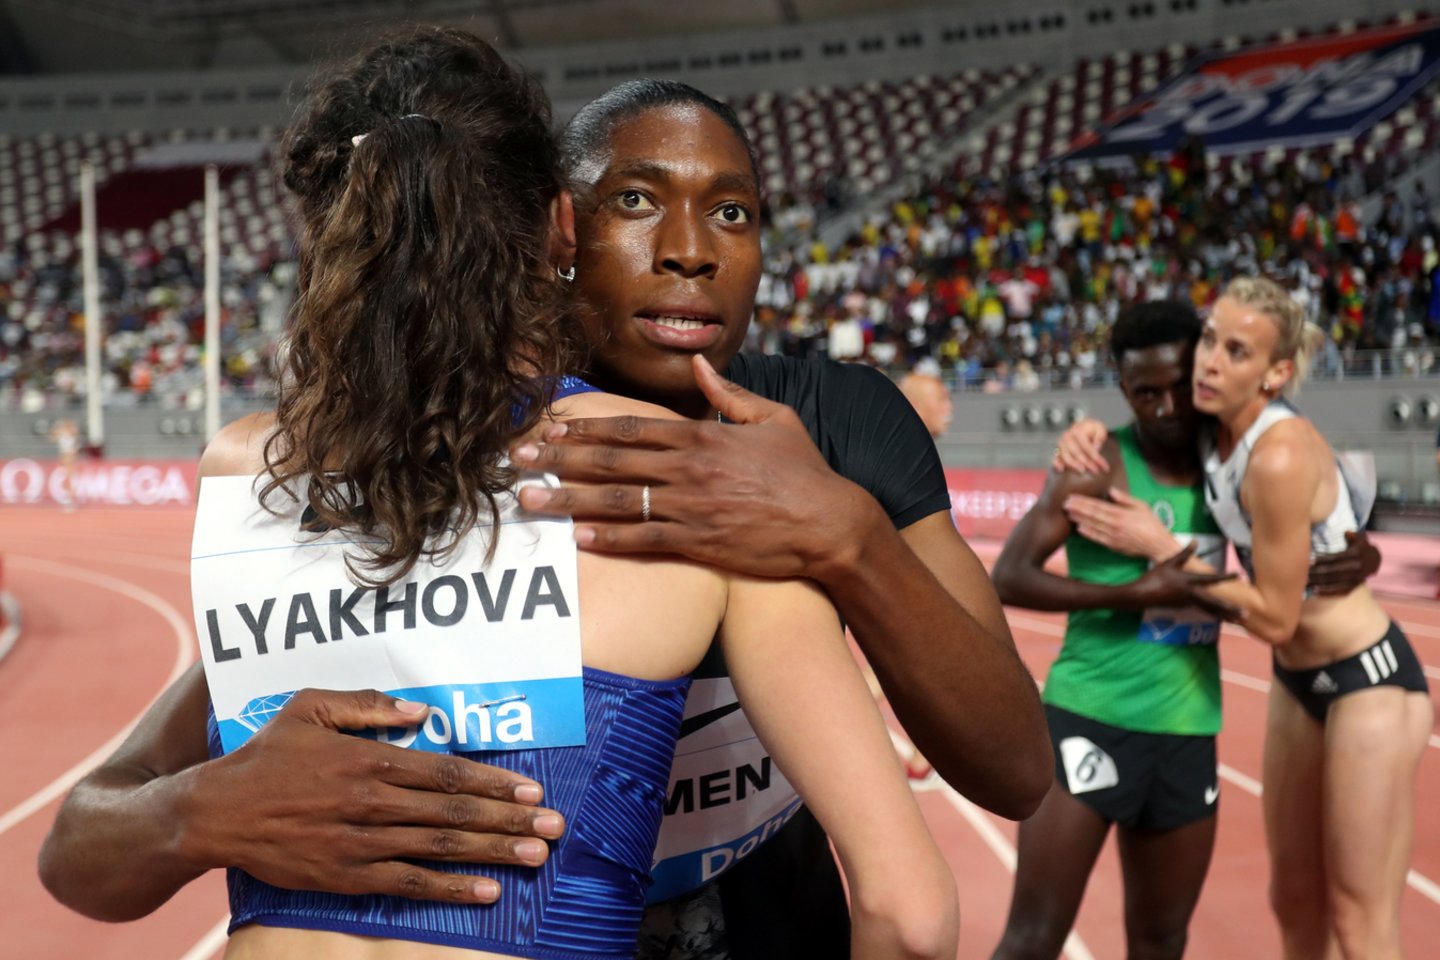  C.Semenya po CAS sprendimo gegužės 3 dieną triumfavo Deimantinės lygos 800 m bėgimo varžybose. Sportininkė galėjo varžytis, nes IAAF taisyklė įsigalioja nuo gegužės 8 dienos.<br> Reuters/Scanpix nuotr.